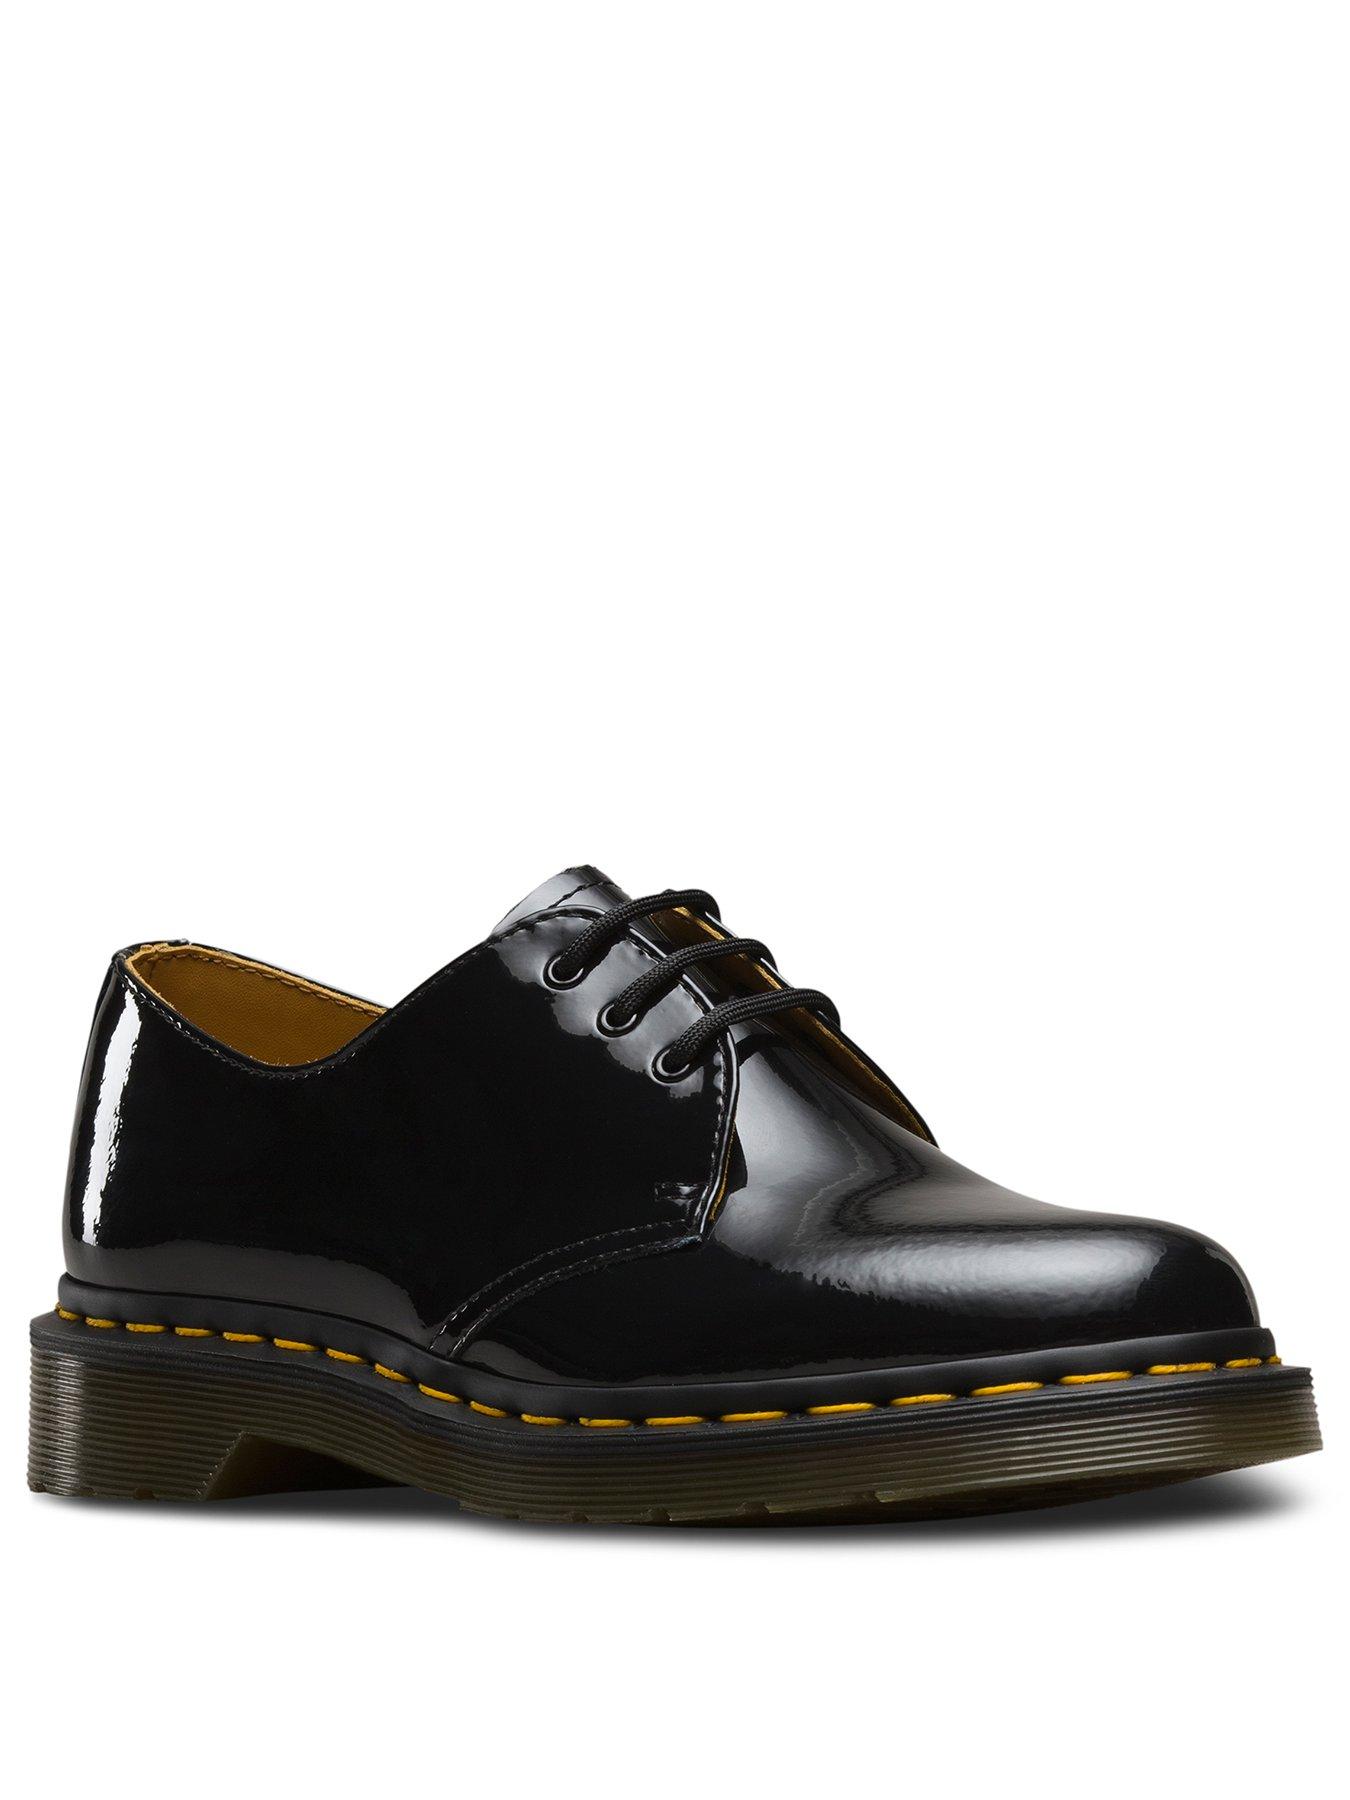 4 | Dr martens | Shoes \u0026 boots | Women 